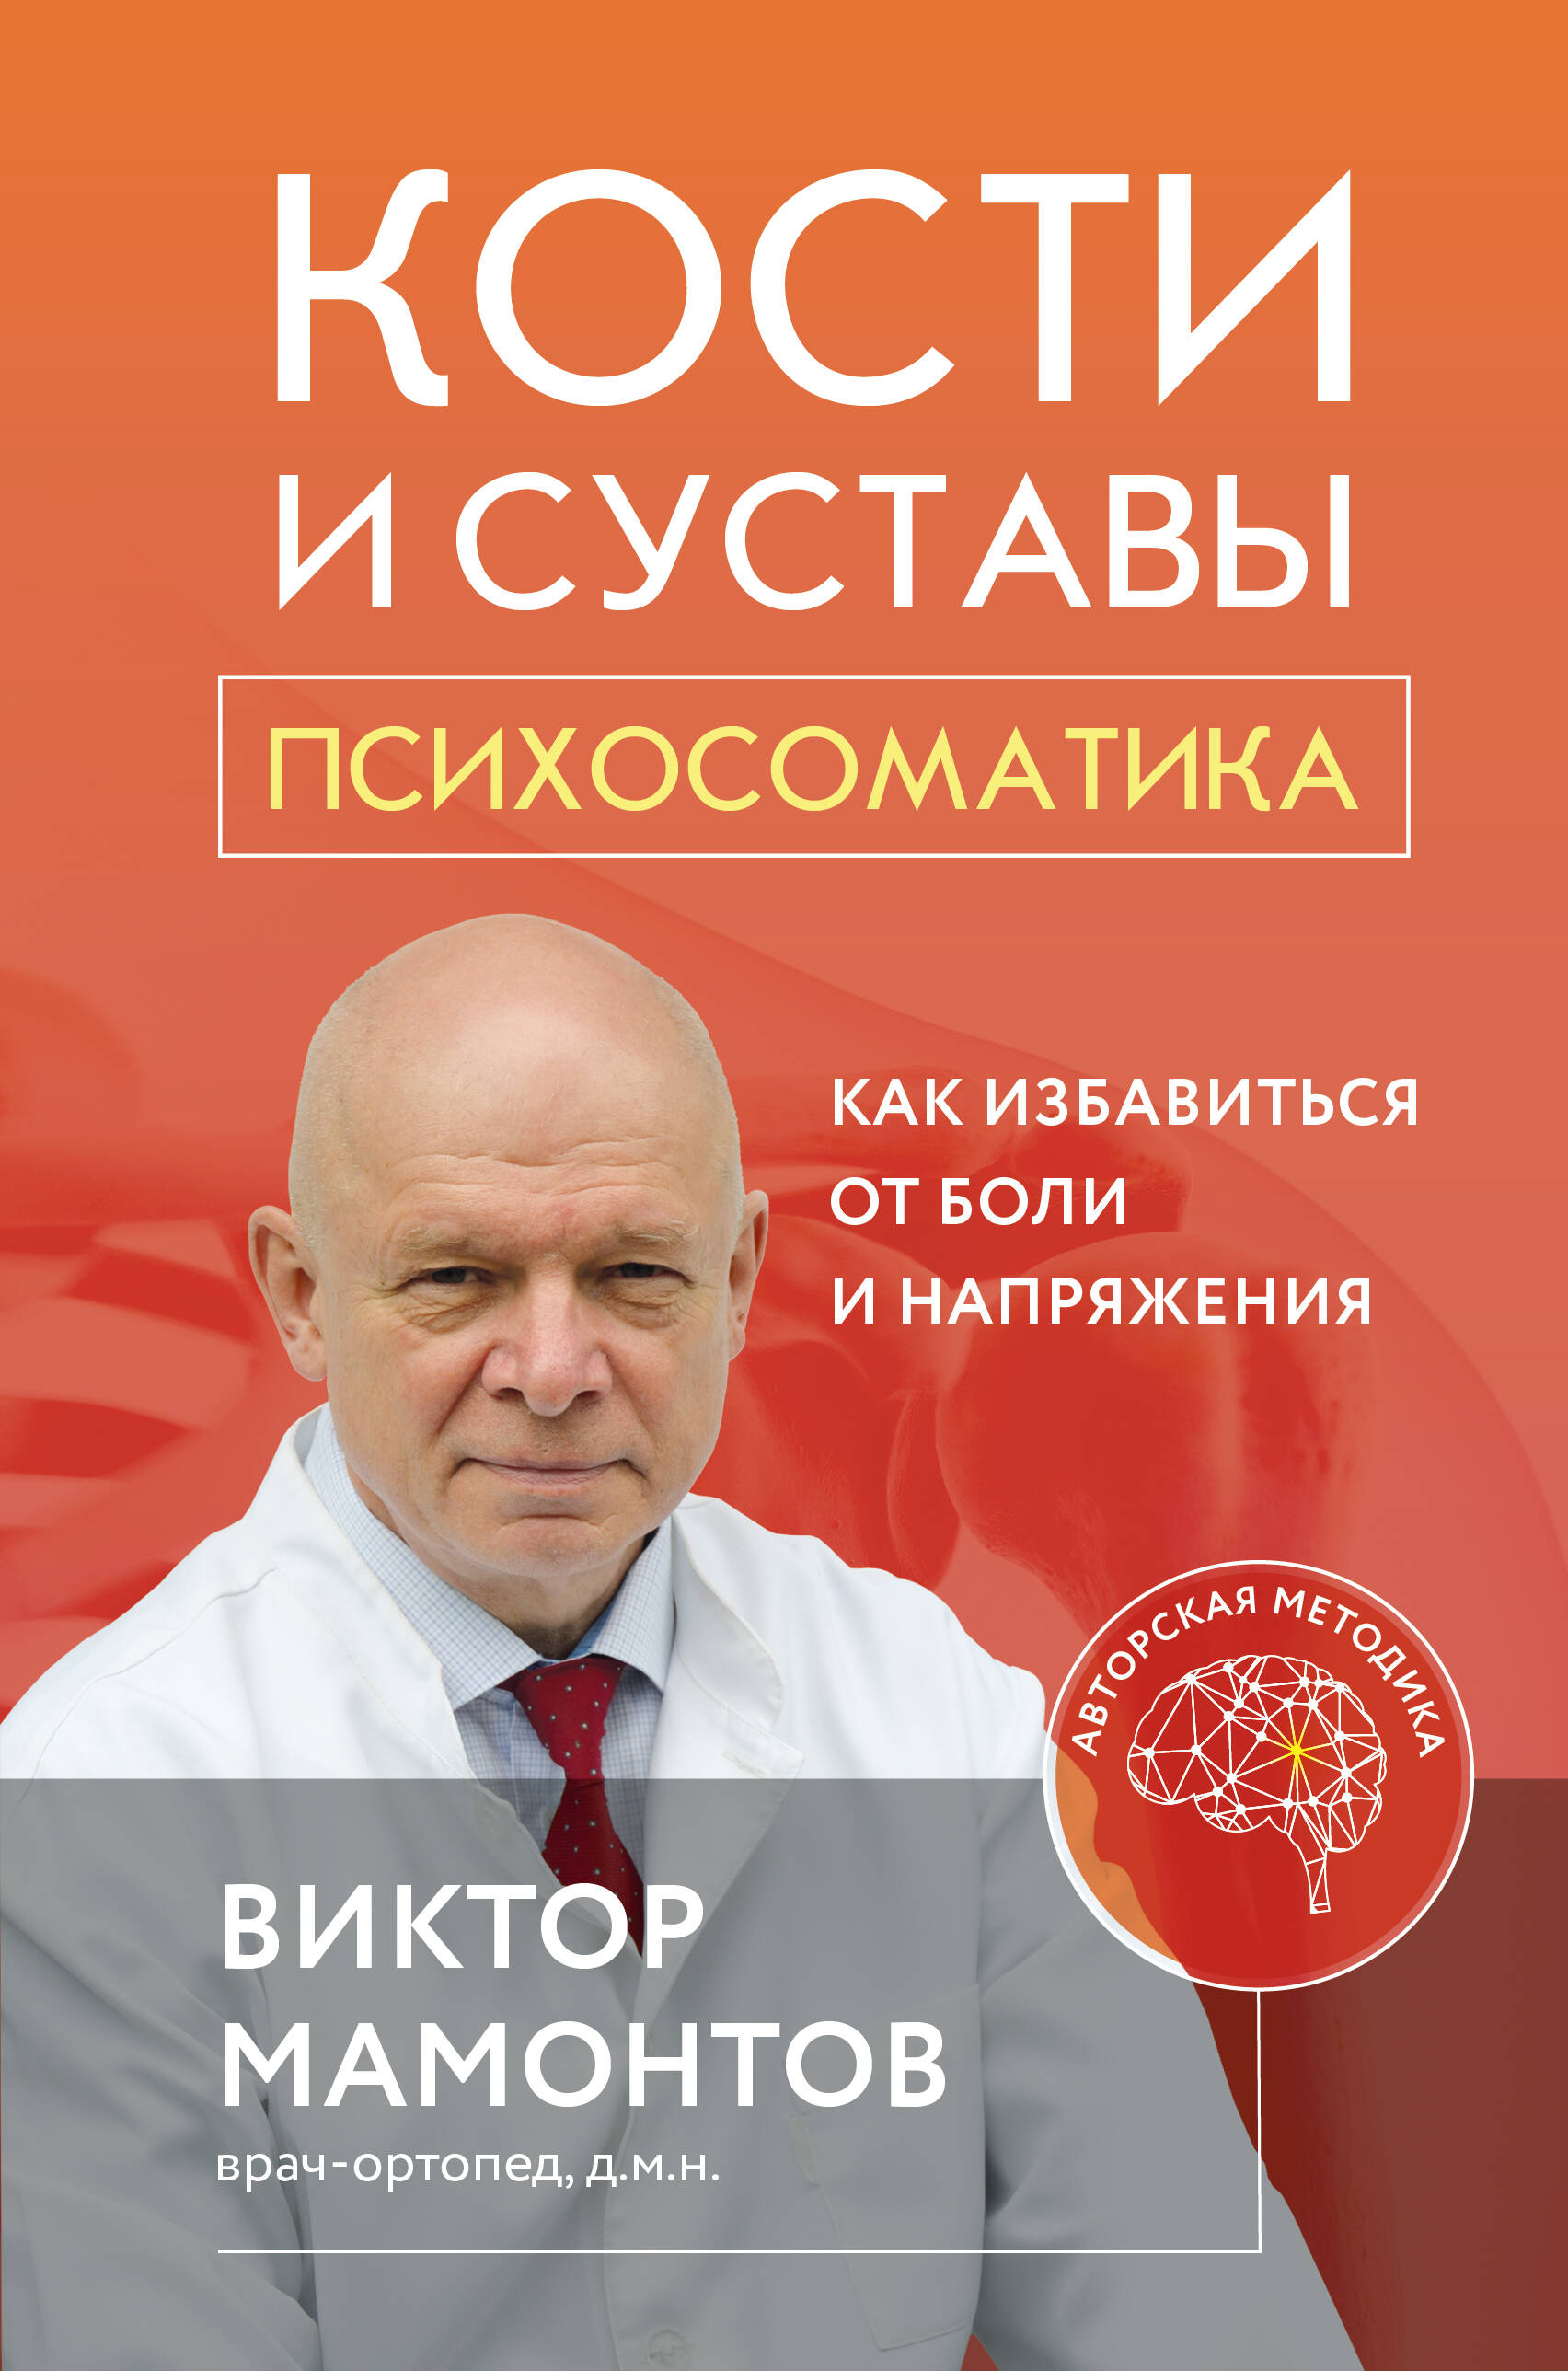 Мамонтов Виктор Дмитриевич - Кости и суставы: психосоматика. Как избавиться от боли и напряжения